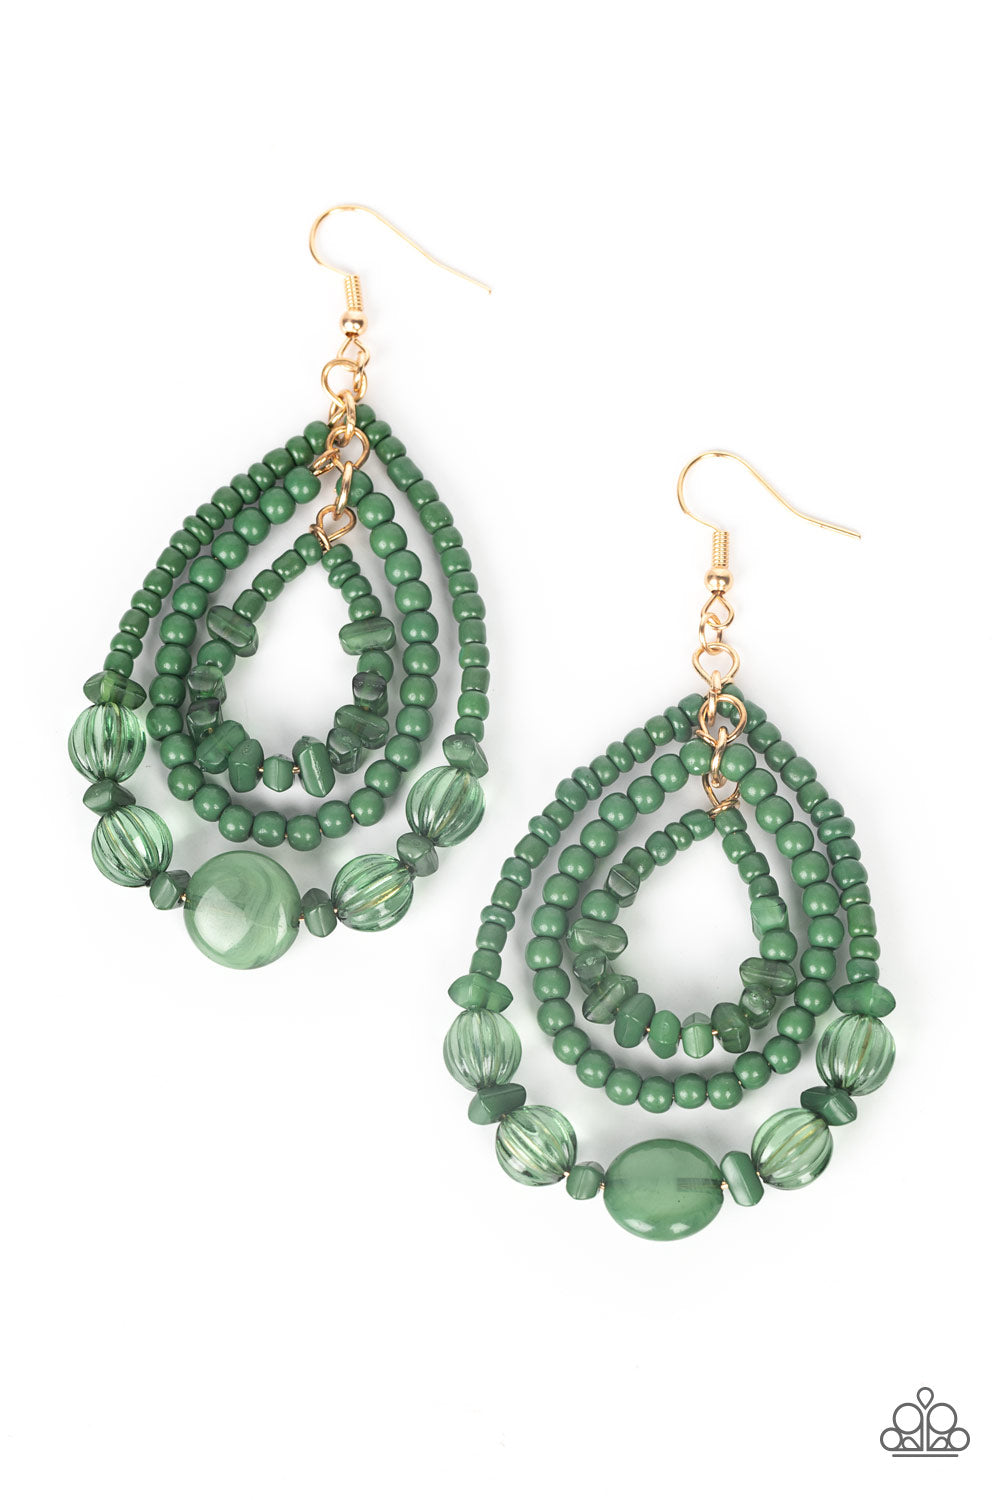 Prana Party Green Earrings - Paparazzi